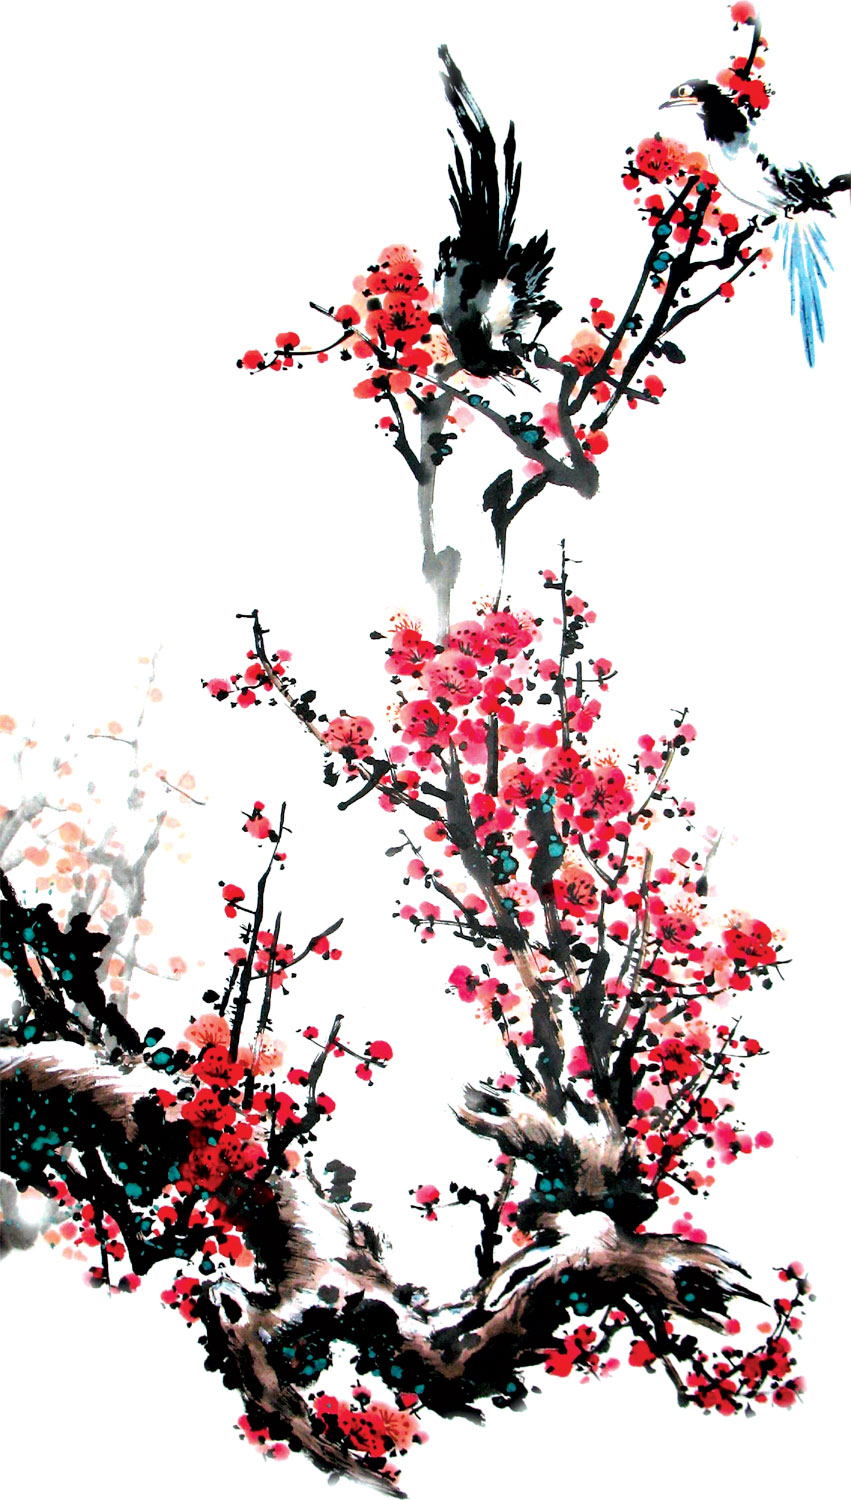 リアルな花のイラスト フリー素材 角 コーナー用no 1507 水墨画風 梅の木